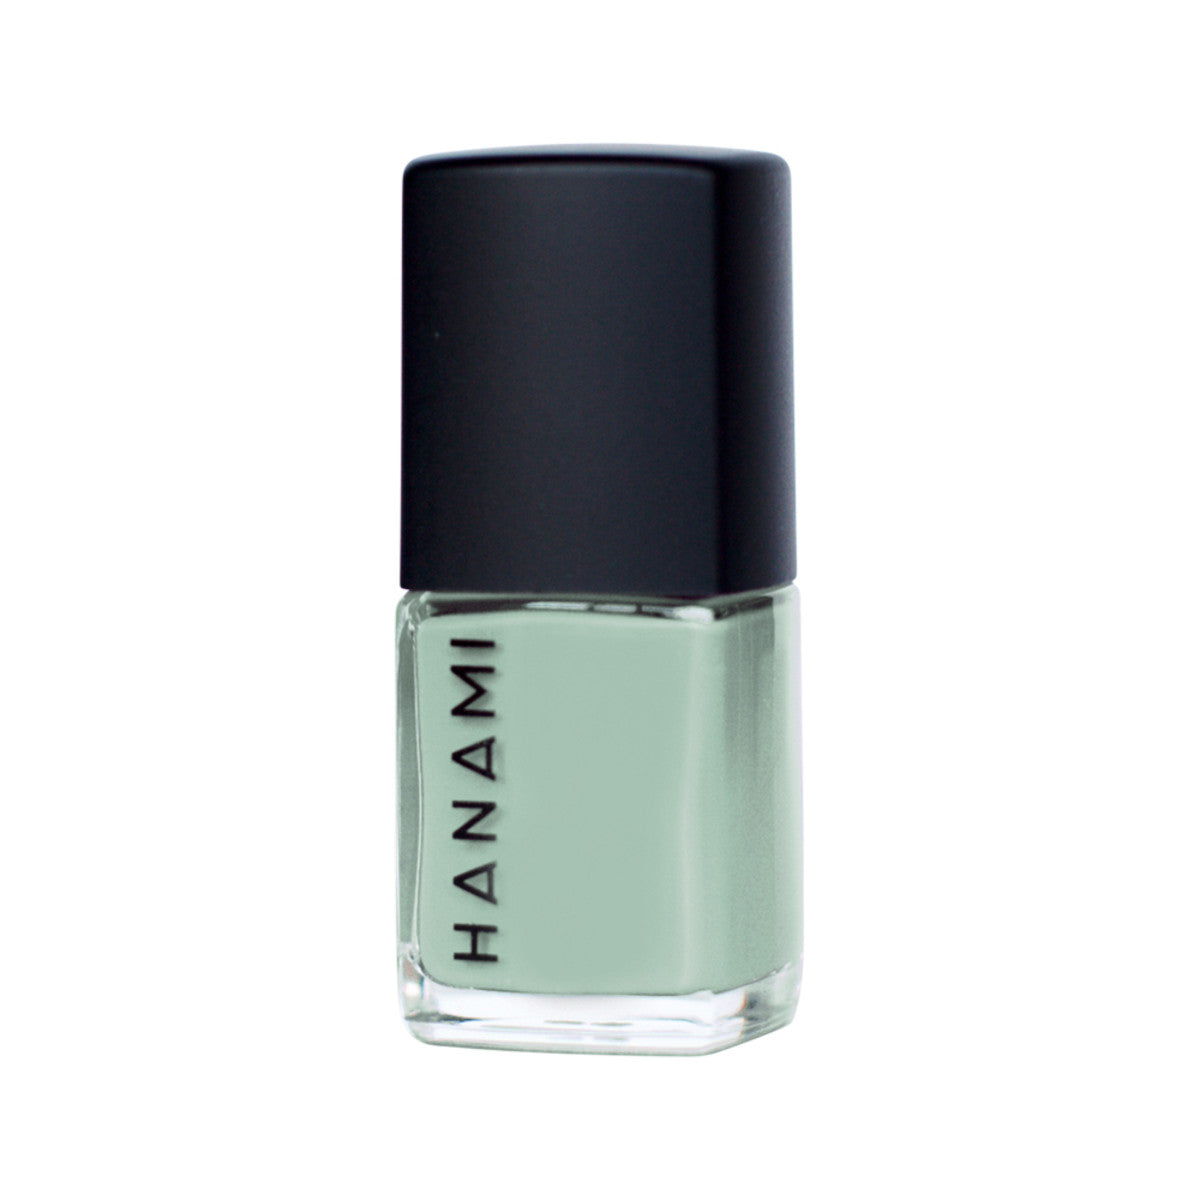 Hanami - Nail Polish The Bay 15ml